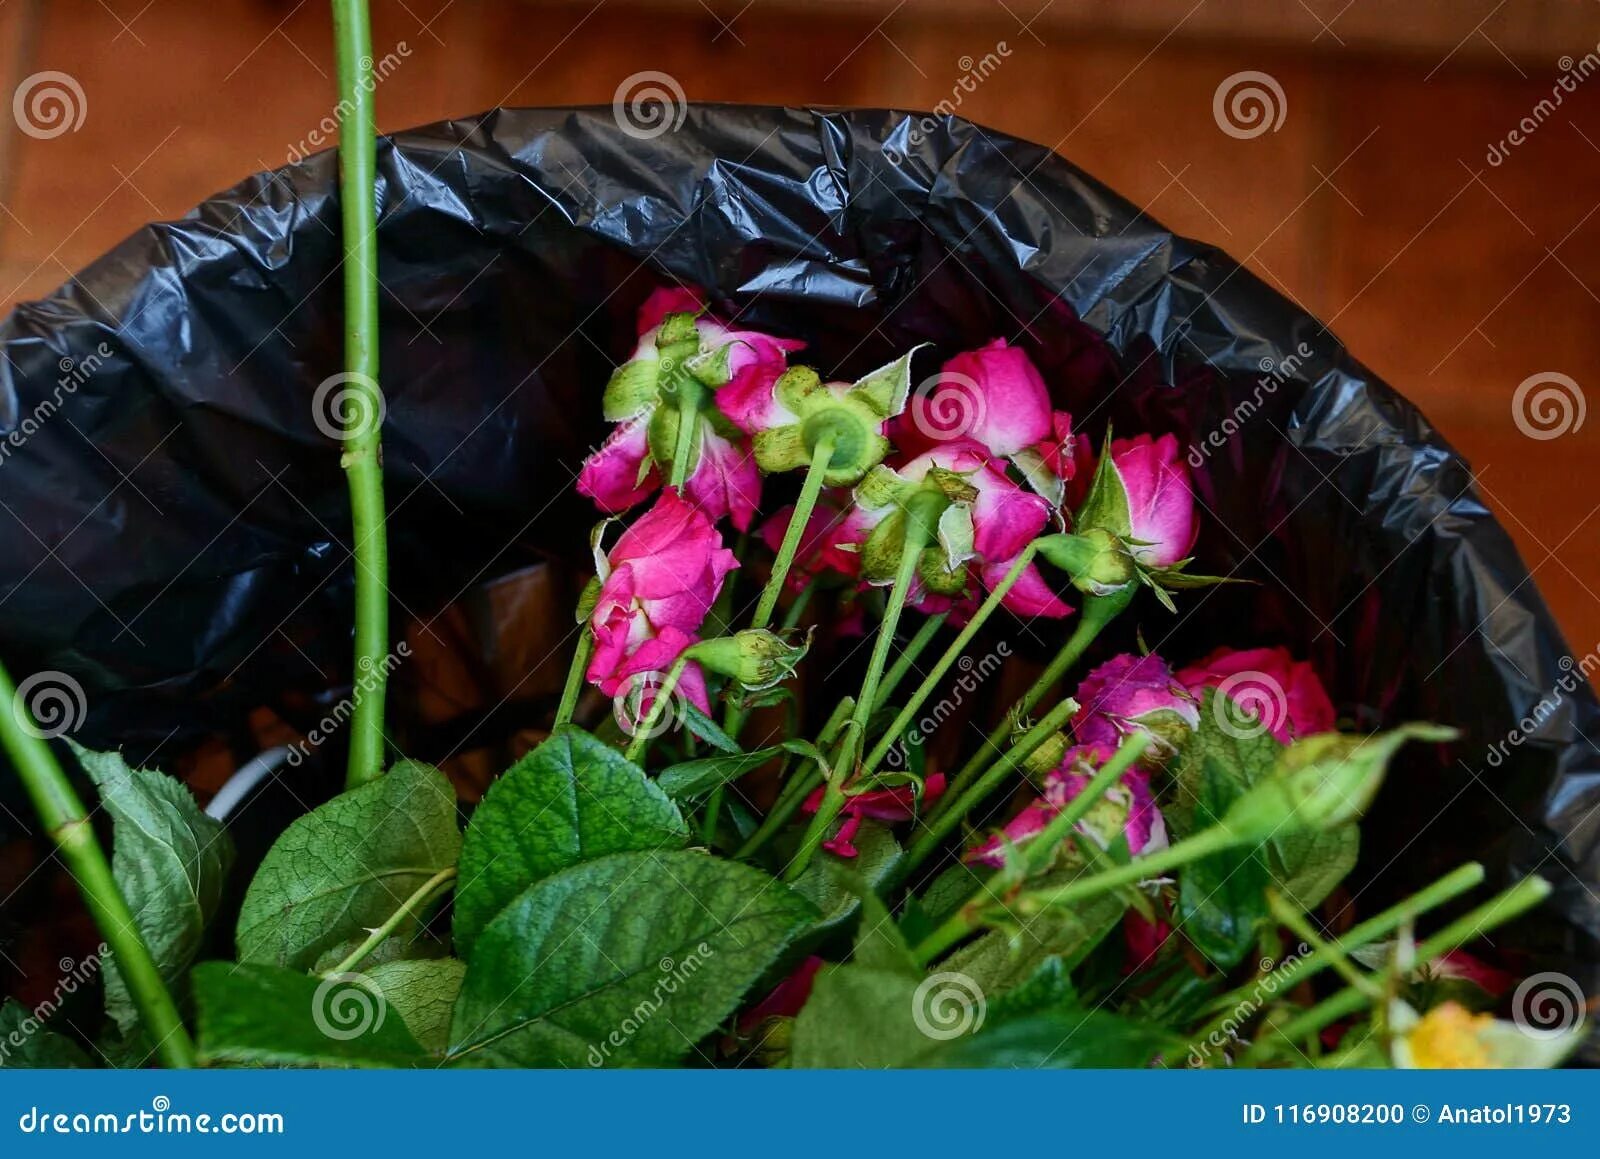 Розы в мусорном ведре. Букет в мусорном ведре. Розы в помойном ведре. Выброшенный букет. Цветы в мусорке